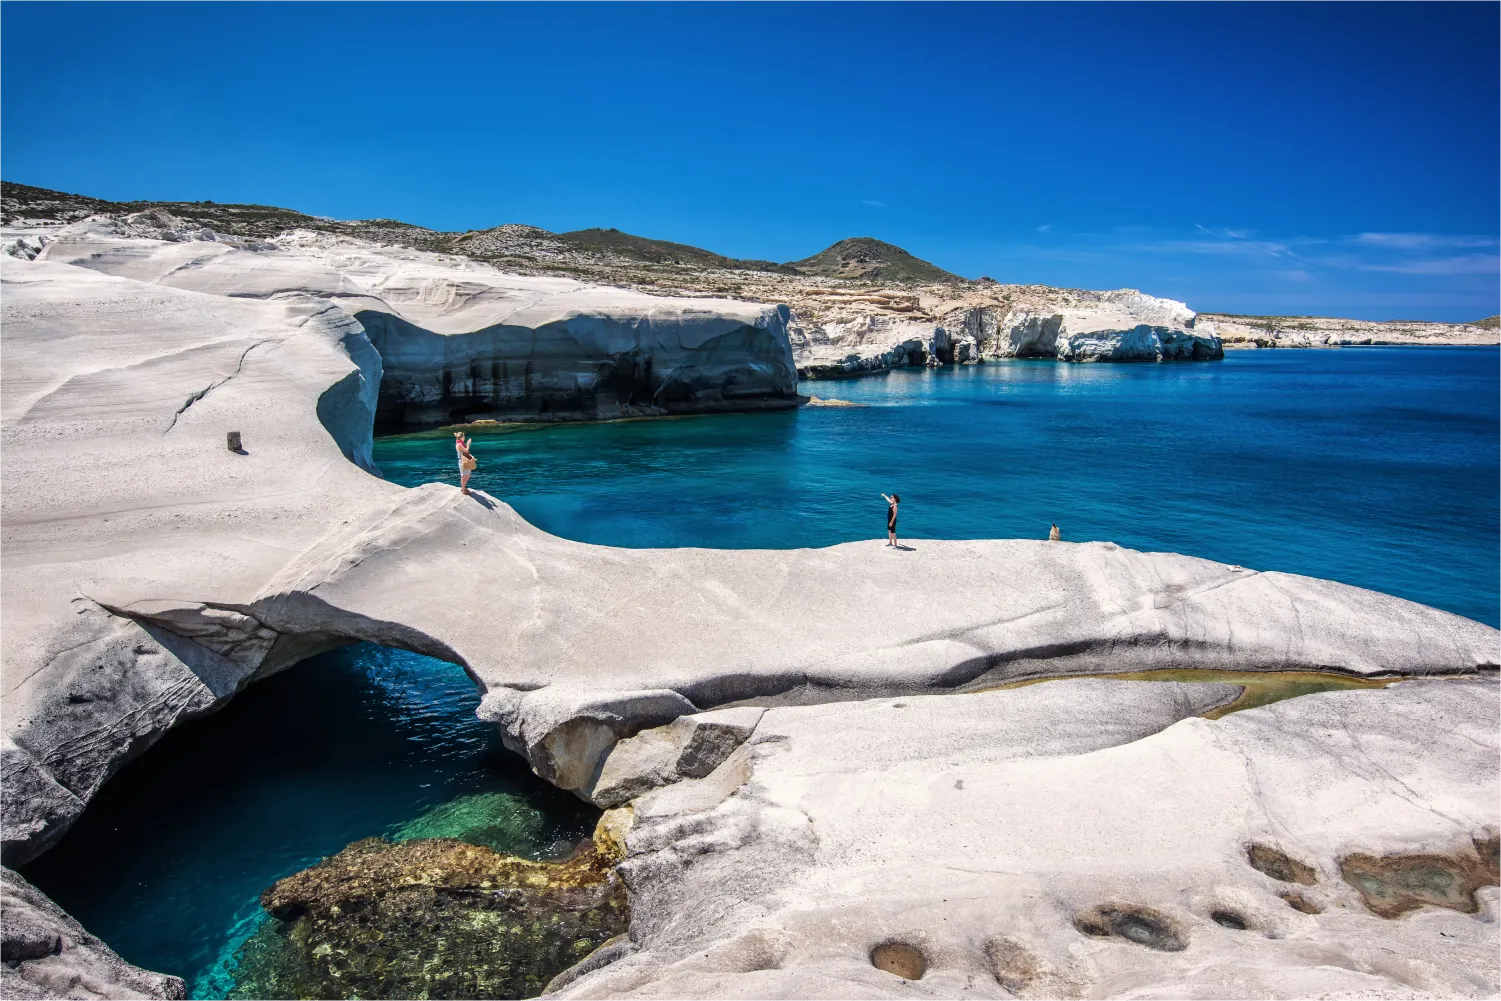 Η εκπληκτική παραλία Σαρακήνικο στη Μήλο με τα λευκά βράχια και τα γαλάζια νερά της